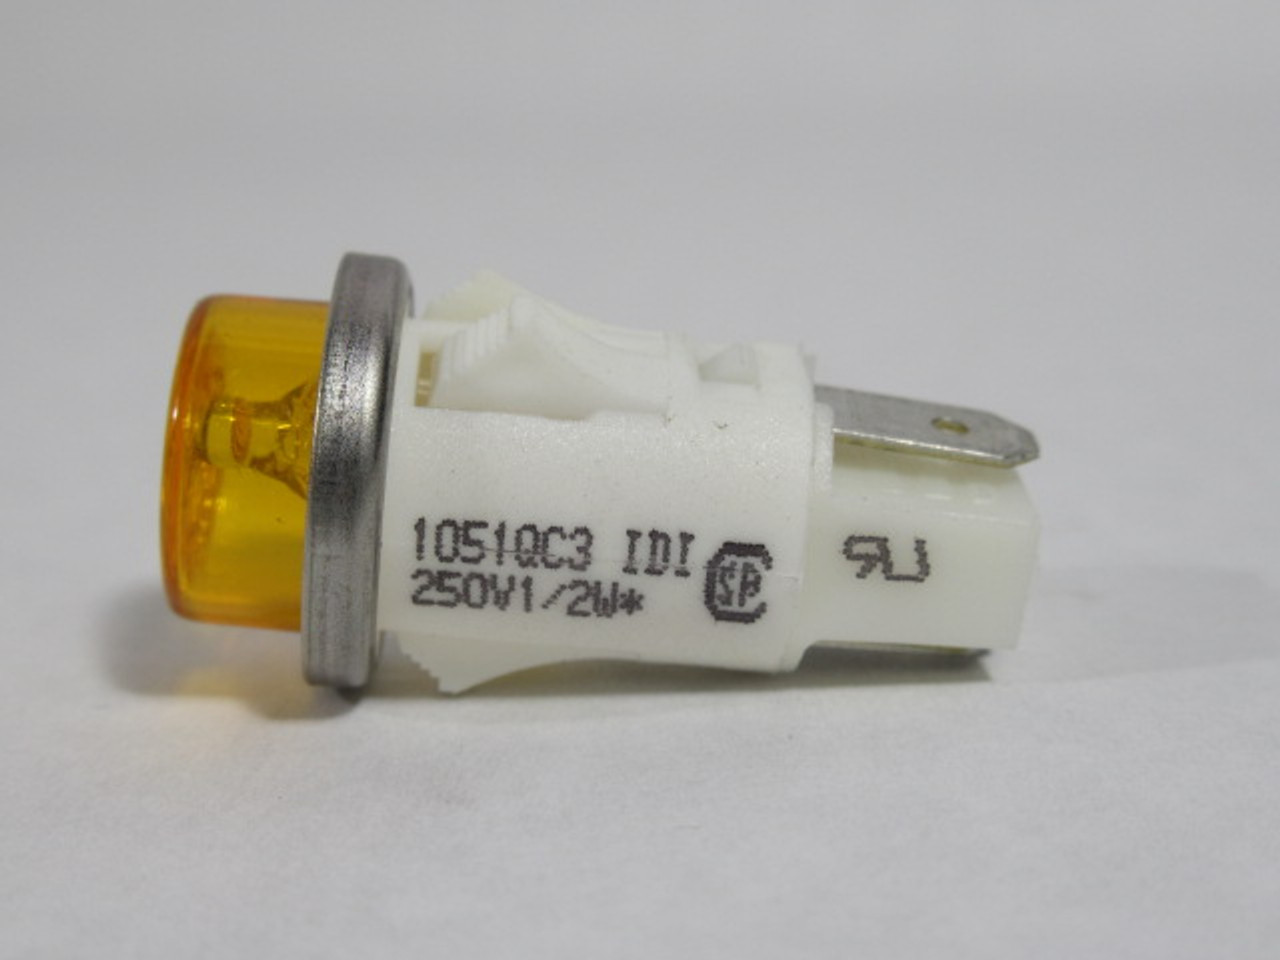 IDI 1051QC3 Amber Push In Indicator Light 250V 1/2W USED